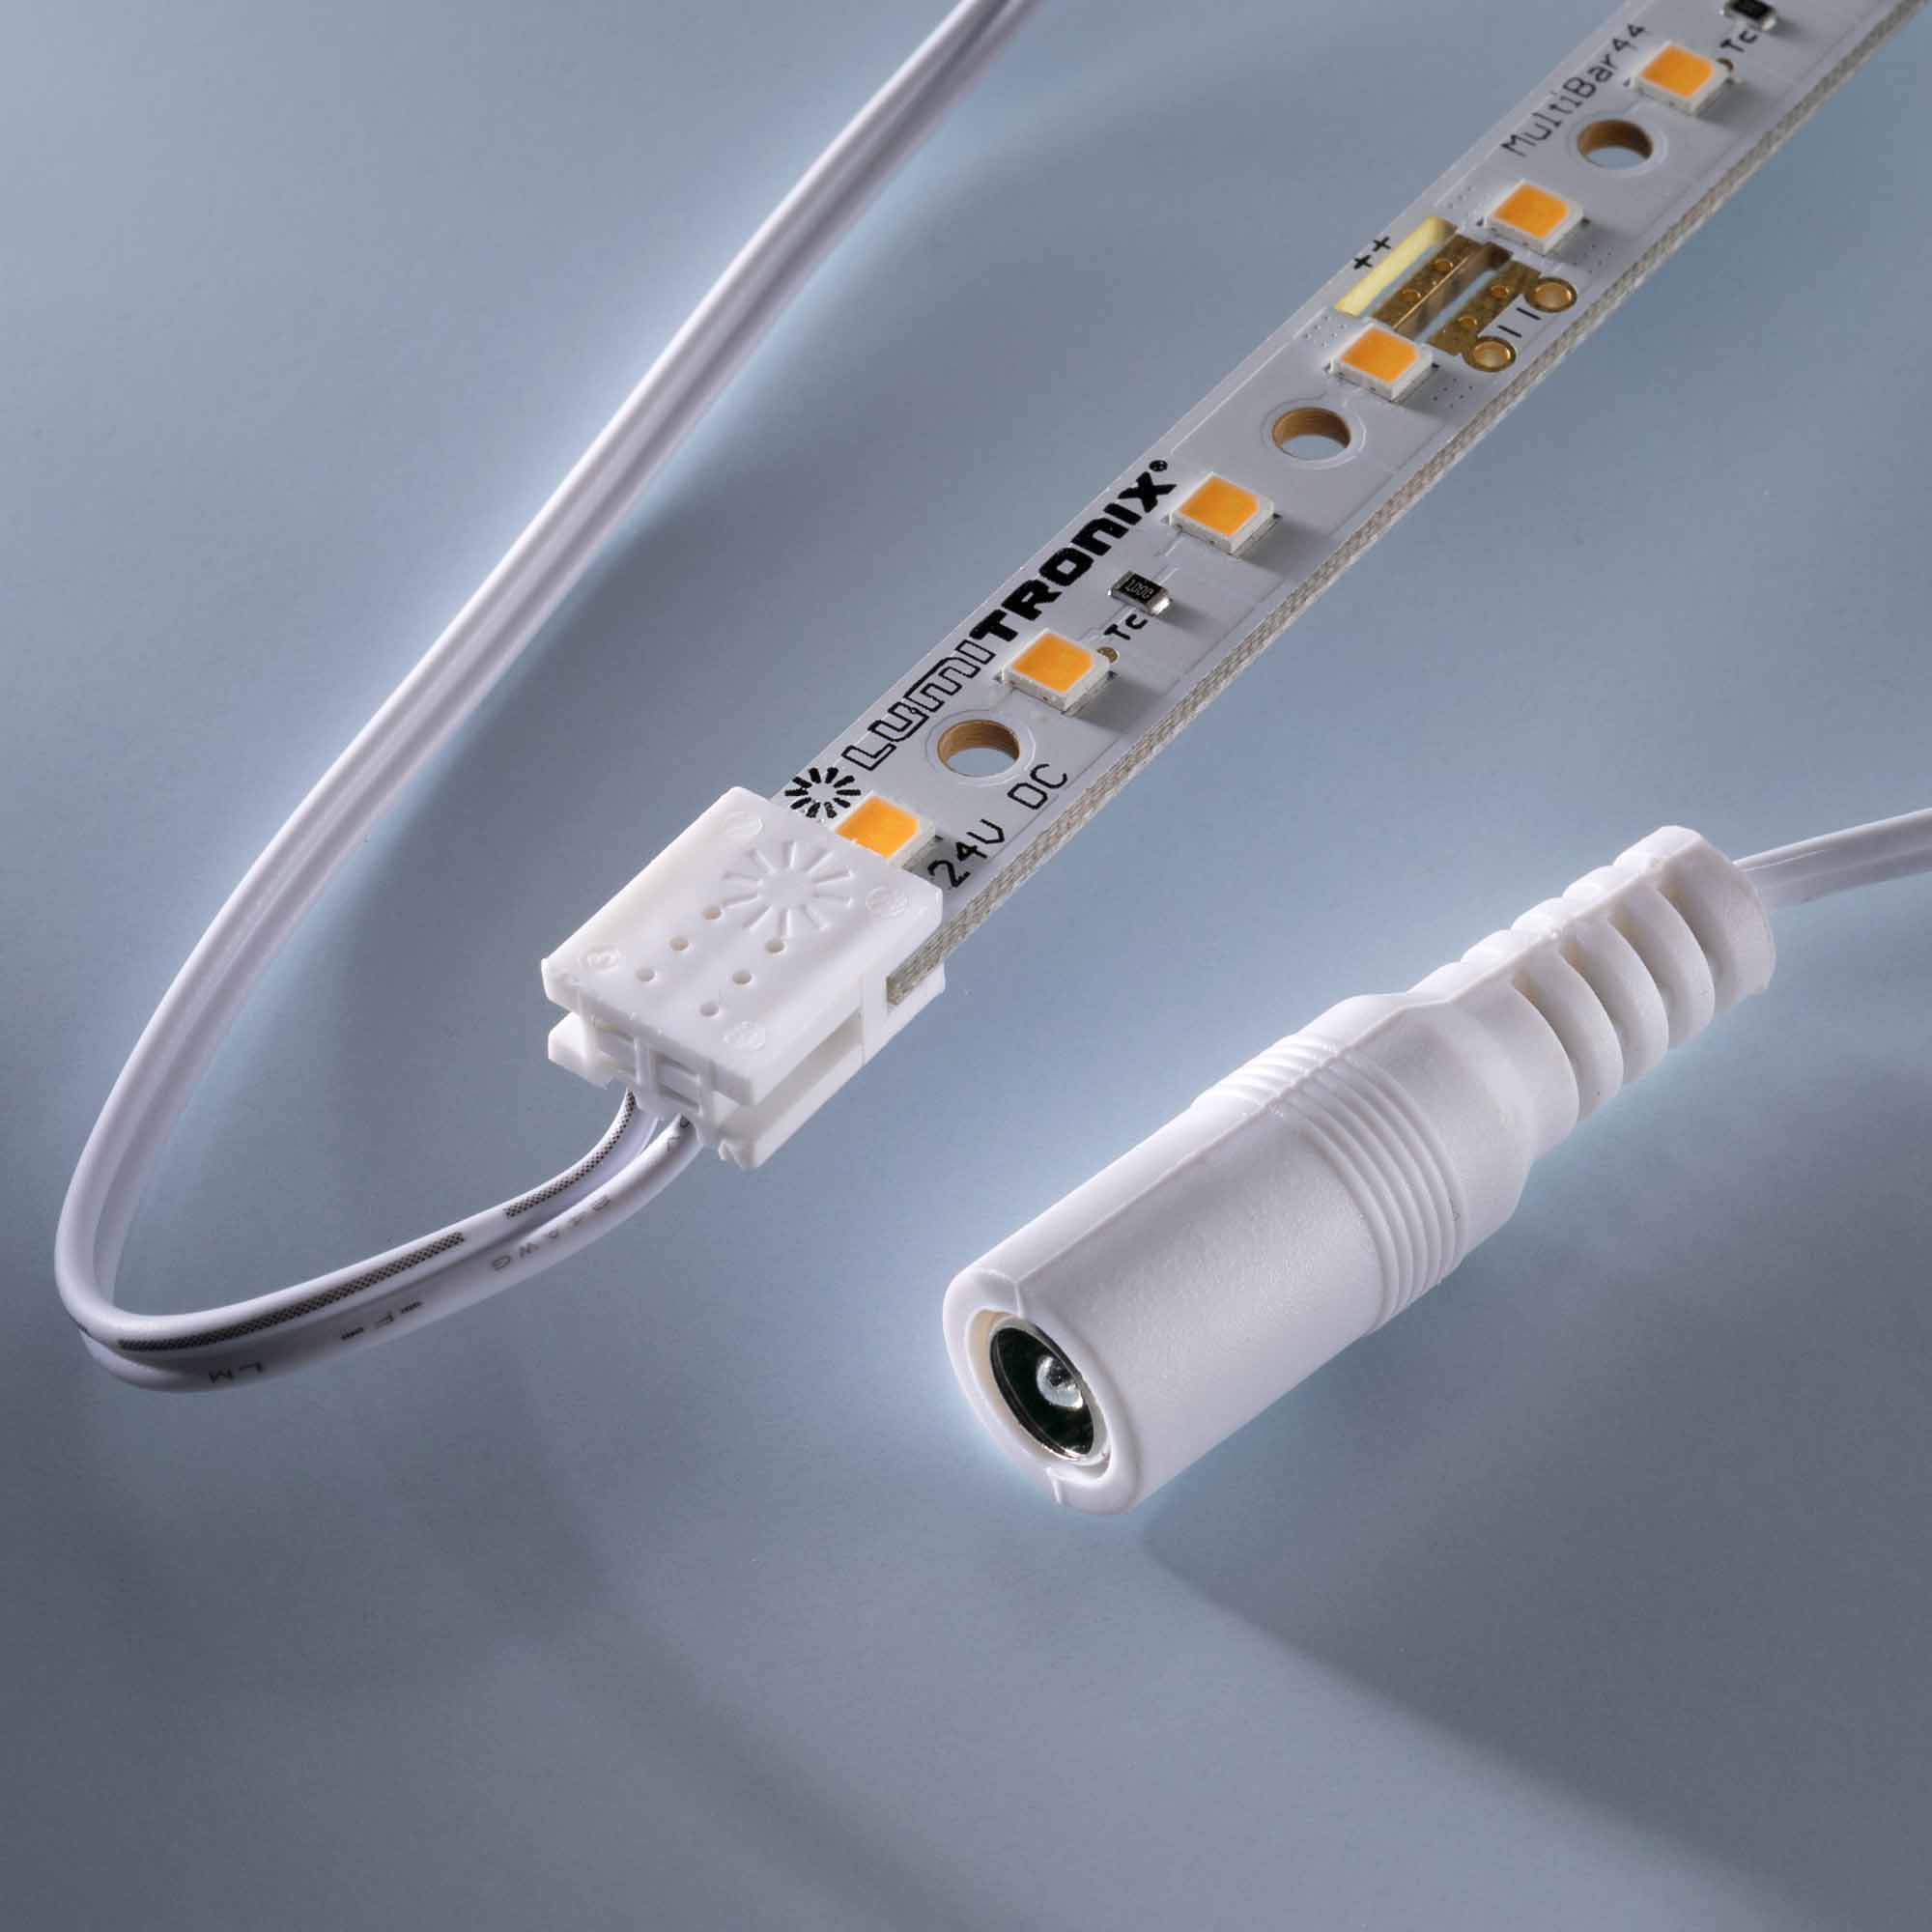 Conector com cabo para alimentação de energia para LED Matrix e MultiBar comprimento 500cm